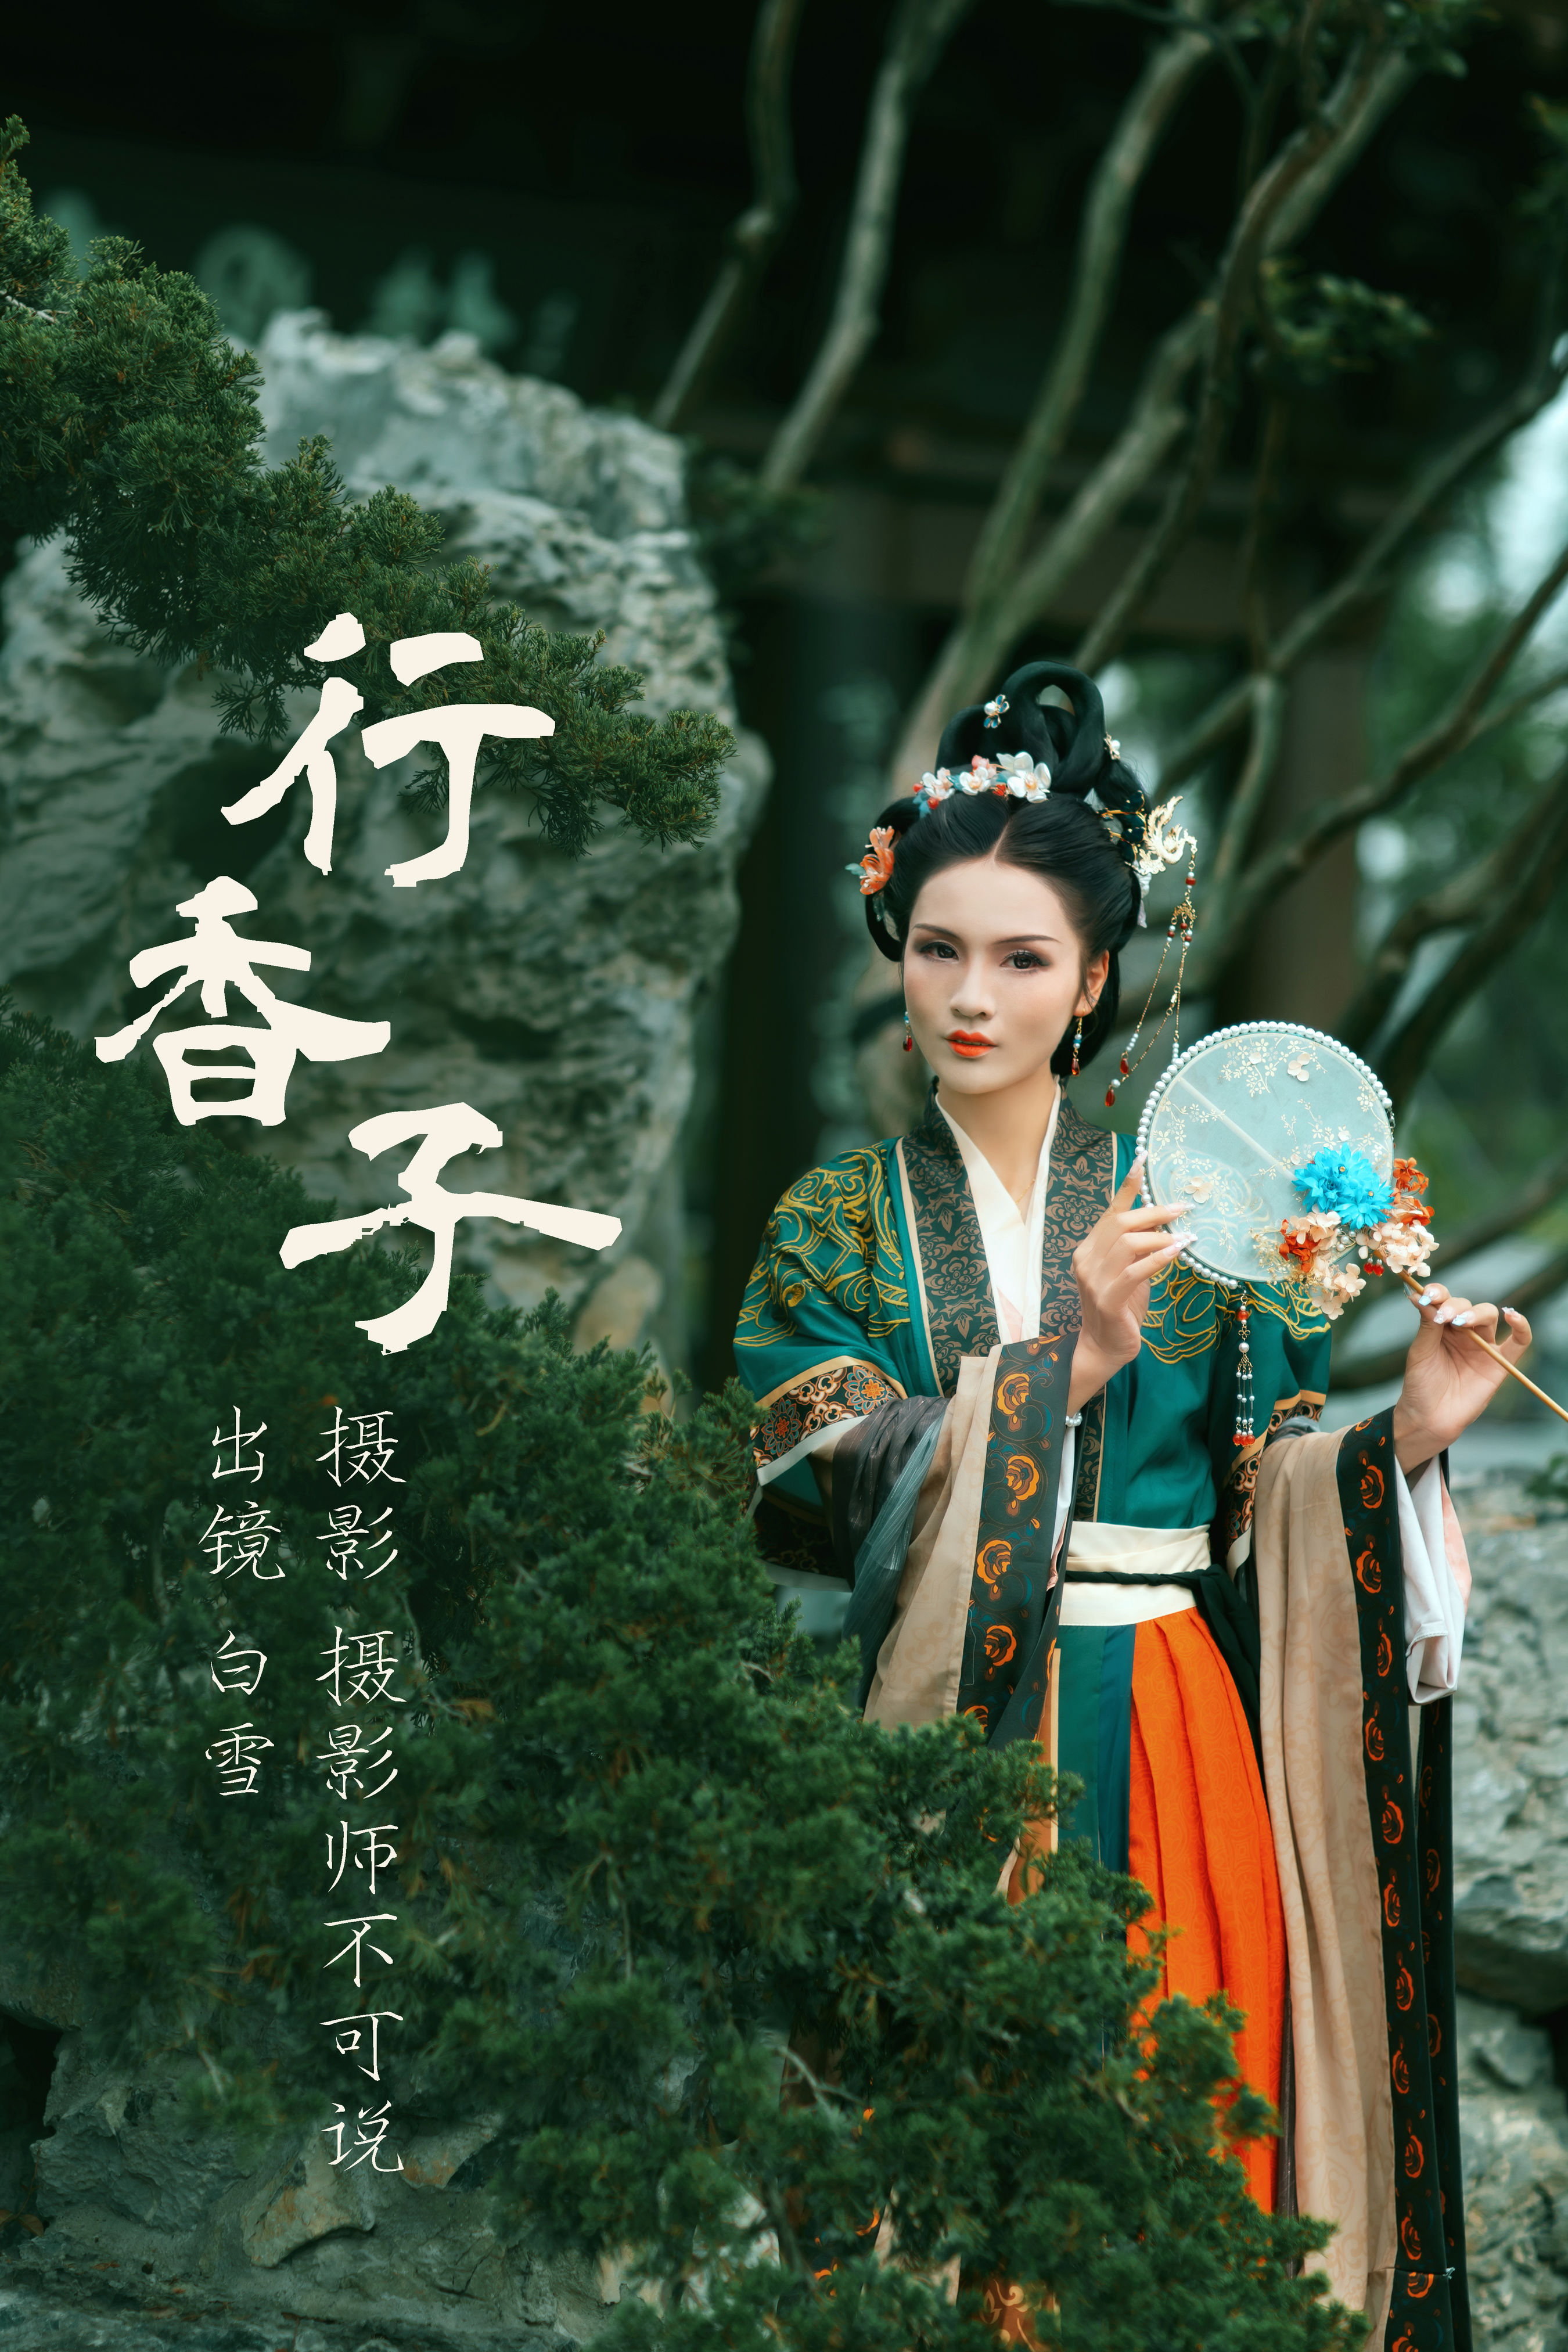 行香子 中国风 摄影 人像 艺术 绝色 绿色 唯美 美图 古典